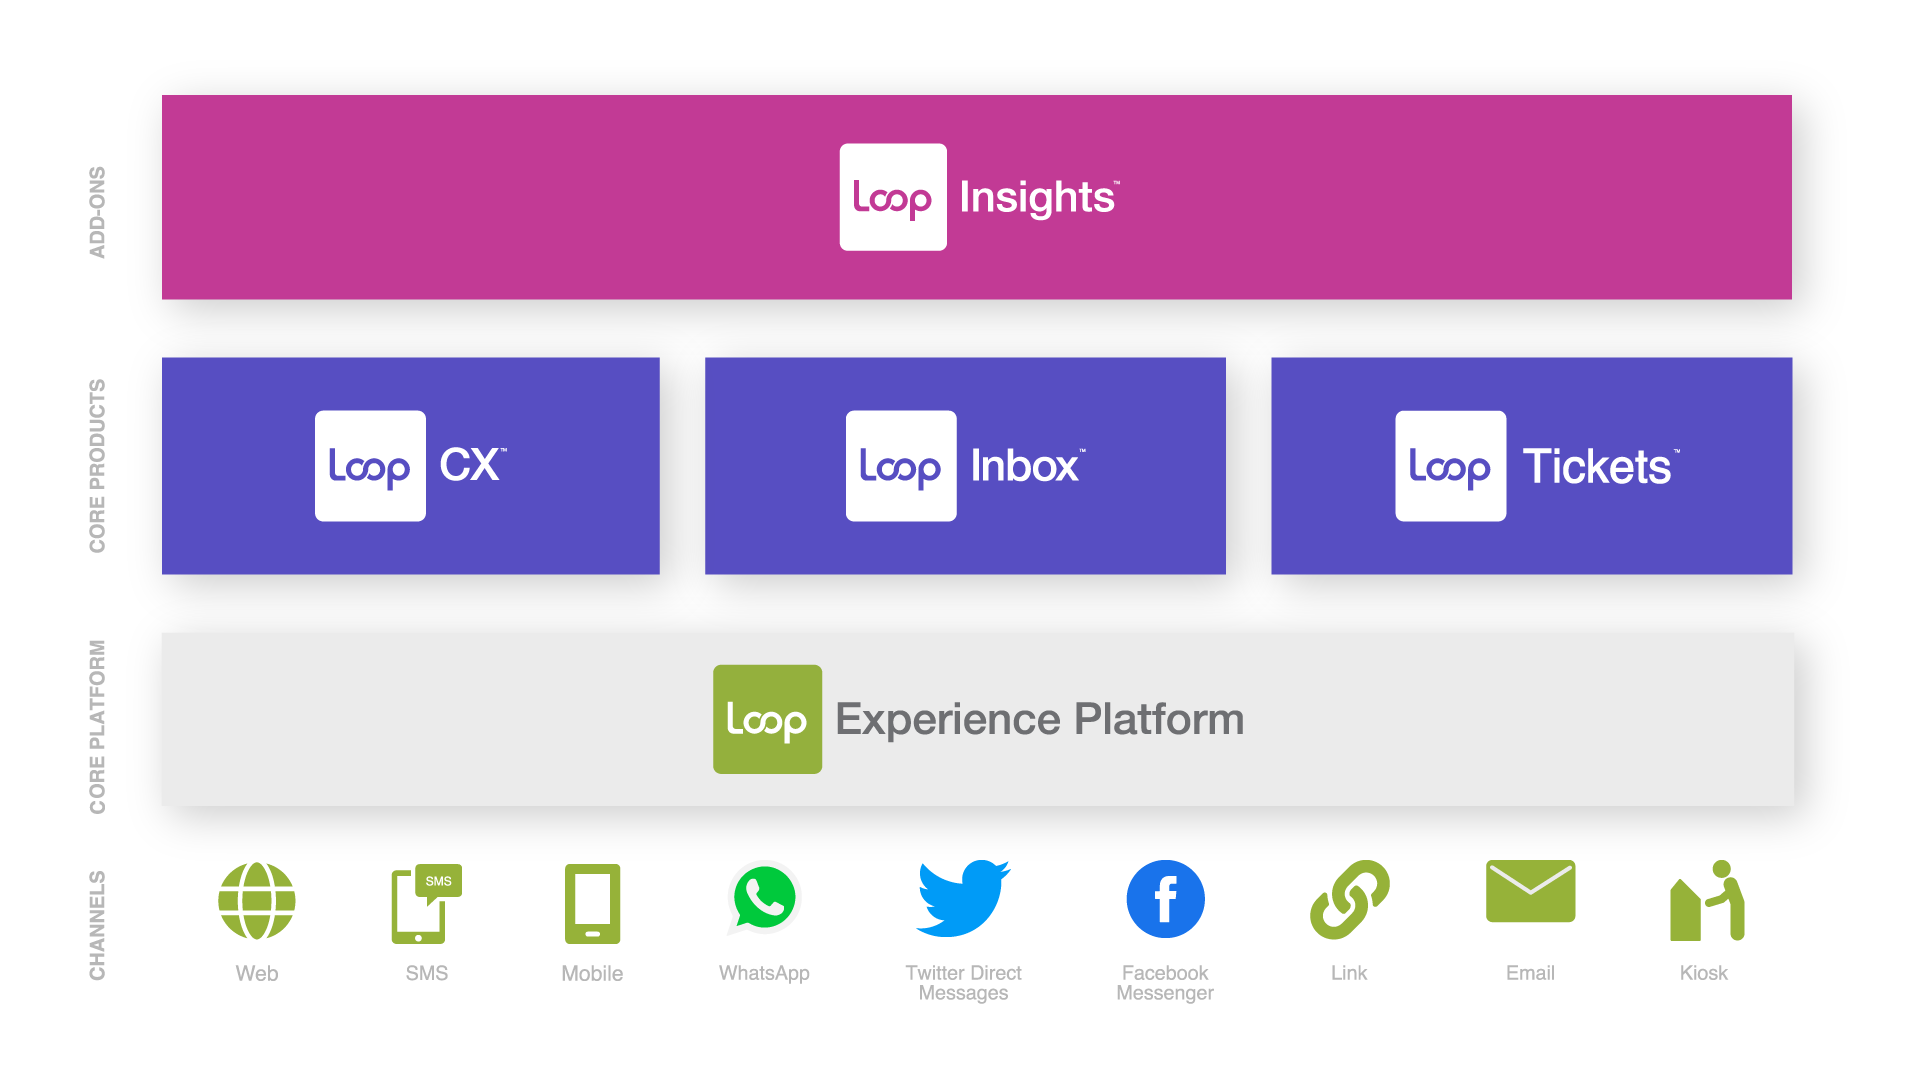 Loop Experience Platform